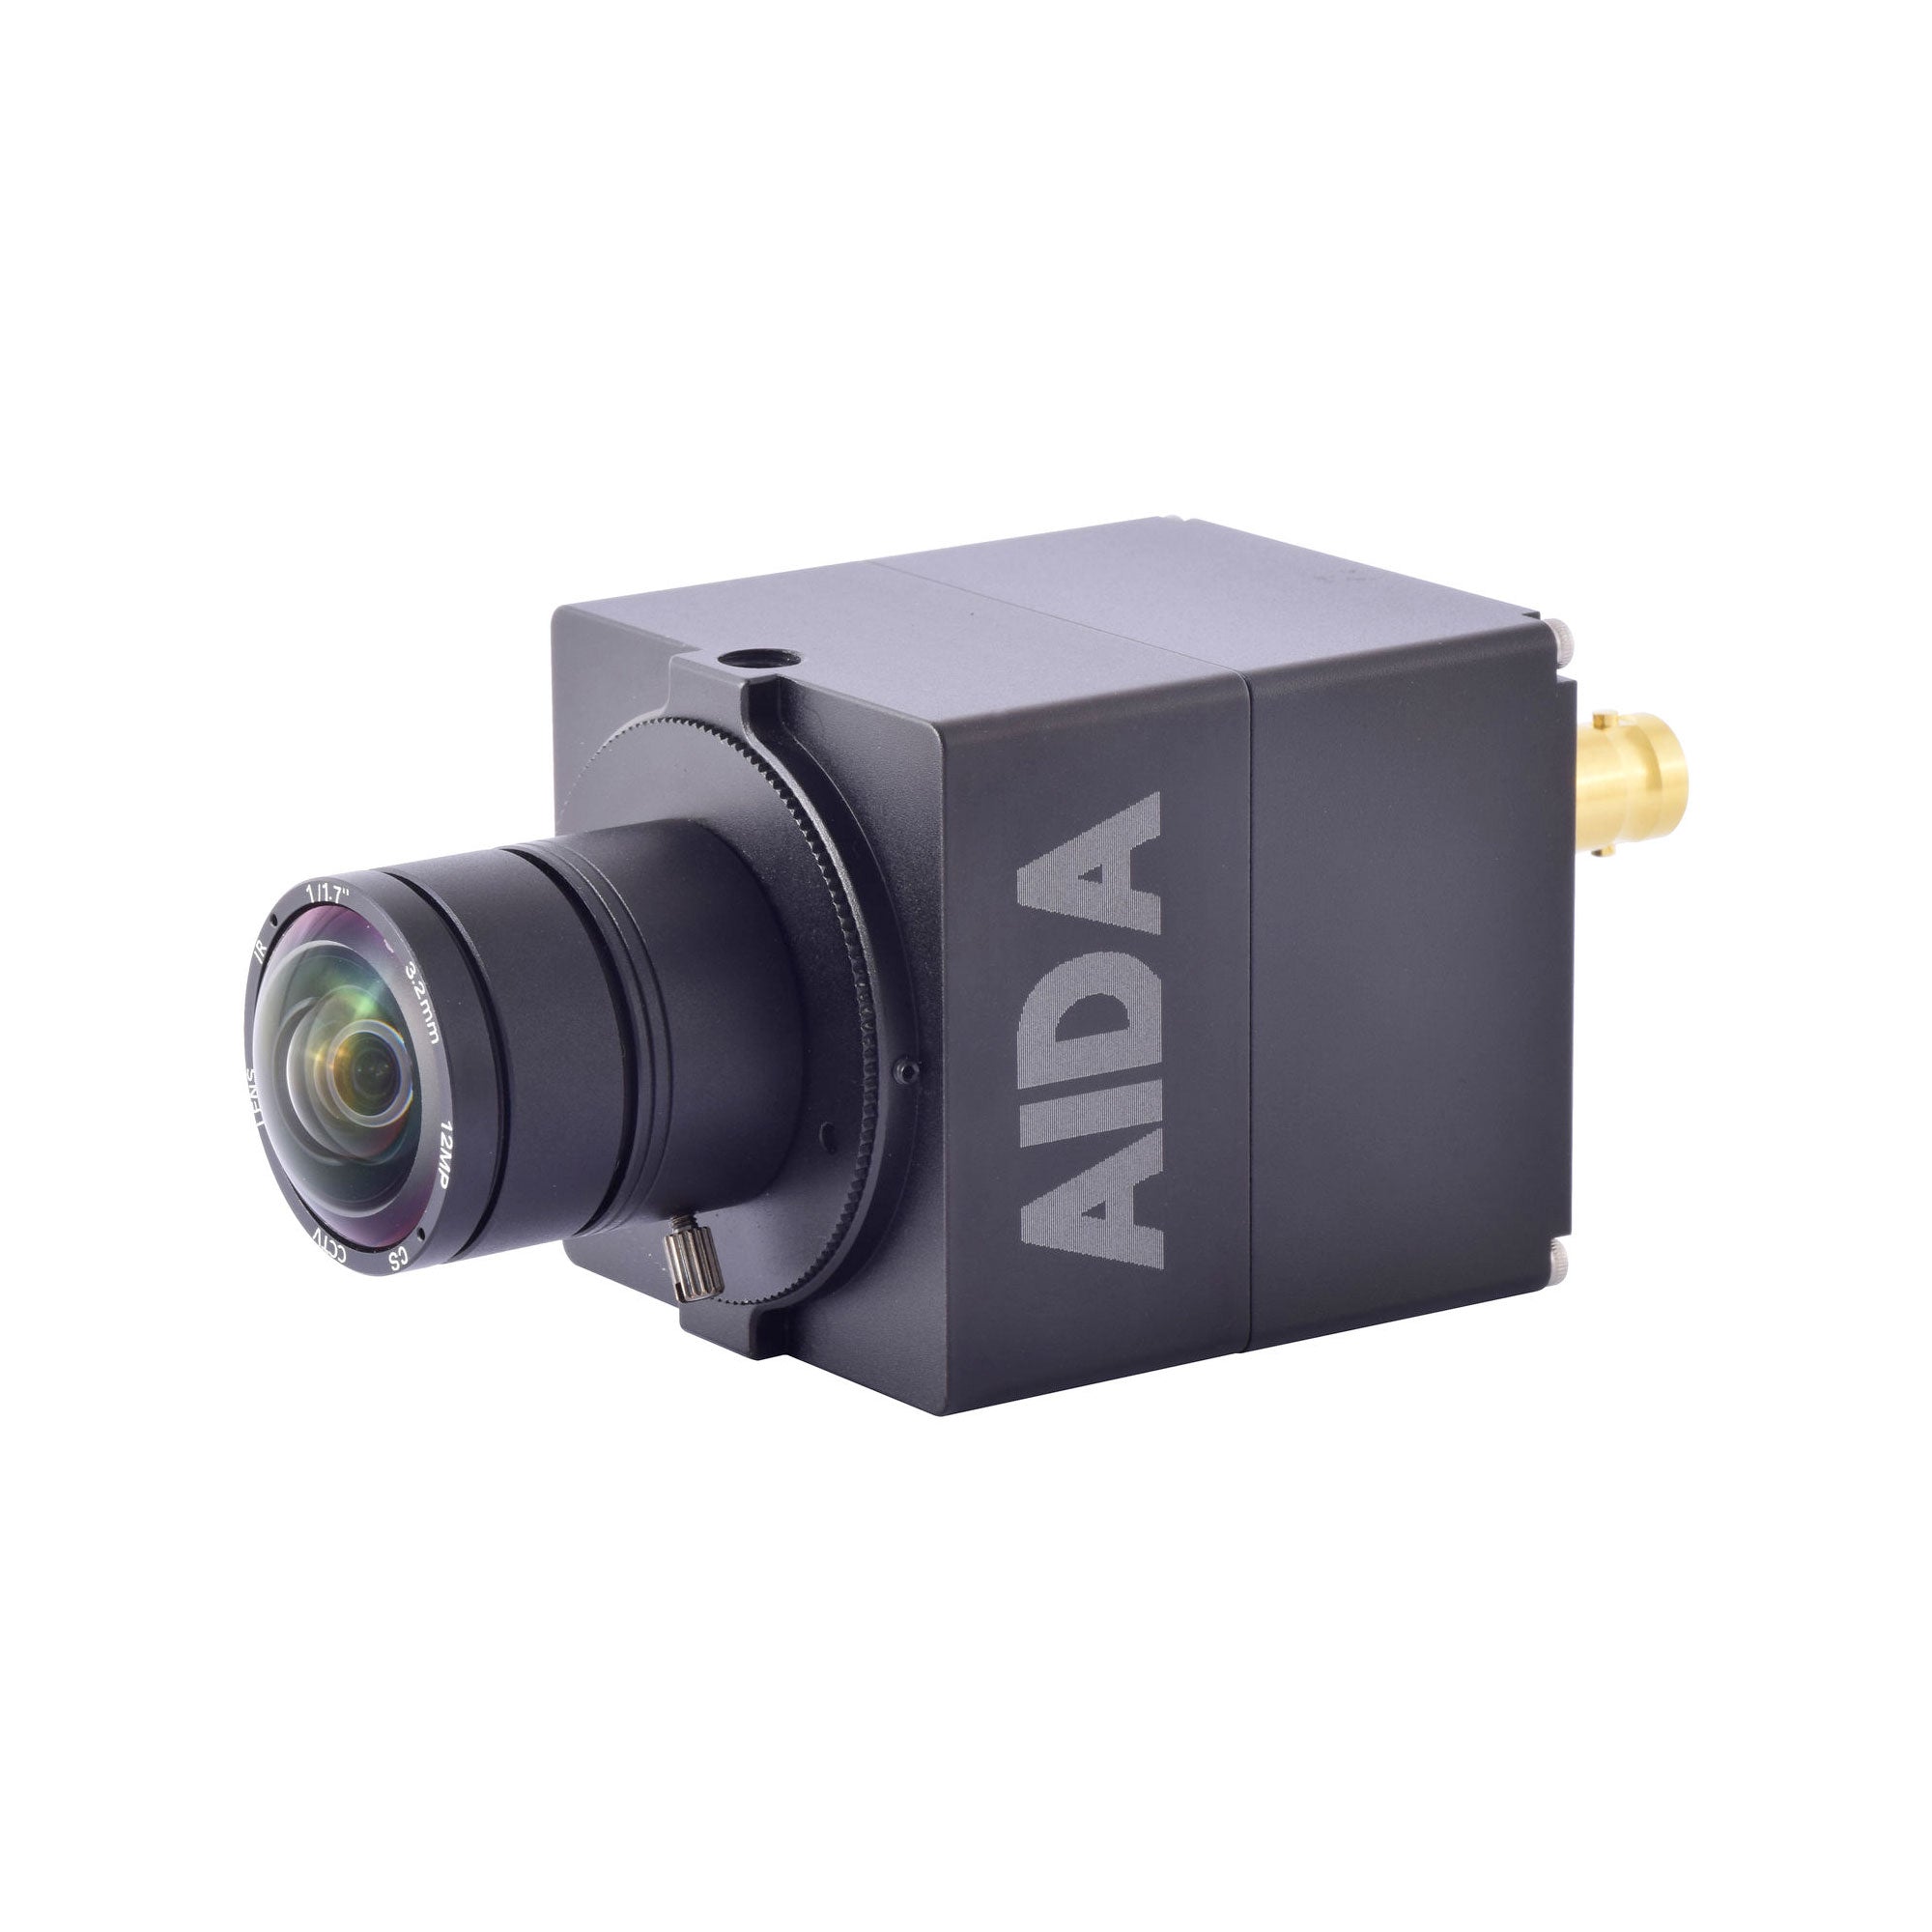 Aida Imaging UHD 4K/30 6G-SDI POV Camera